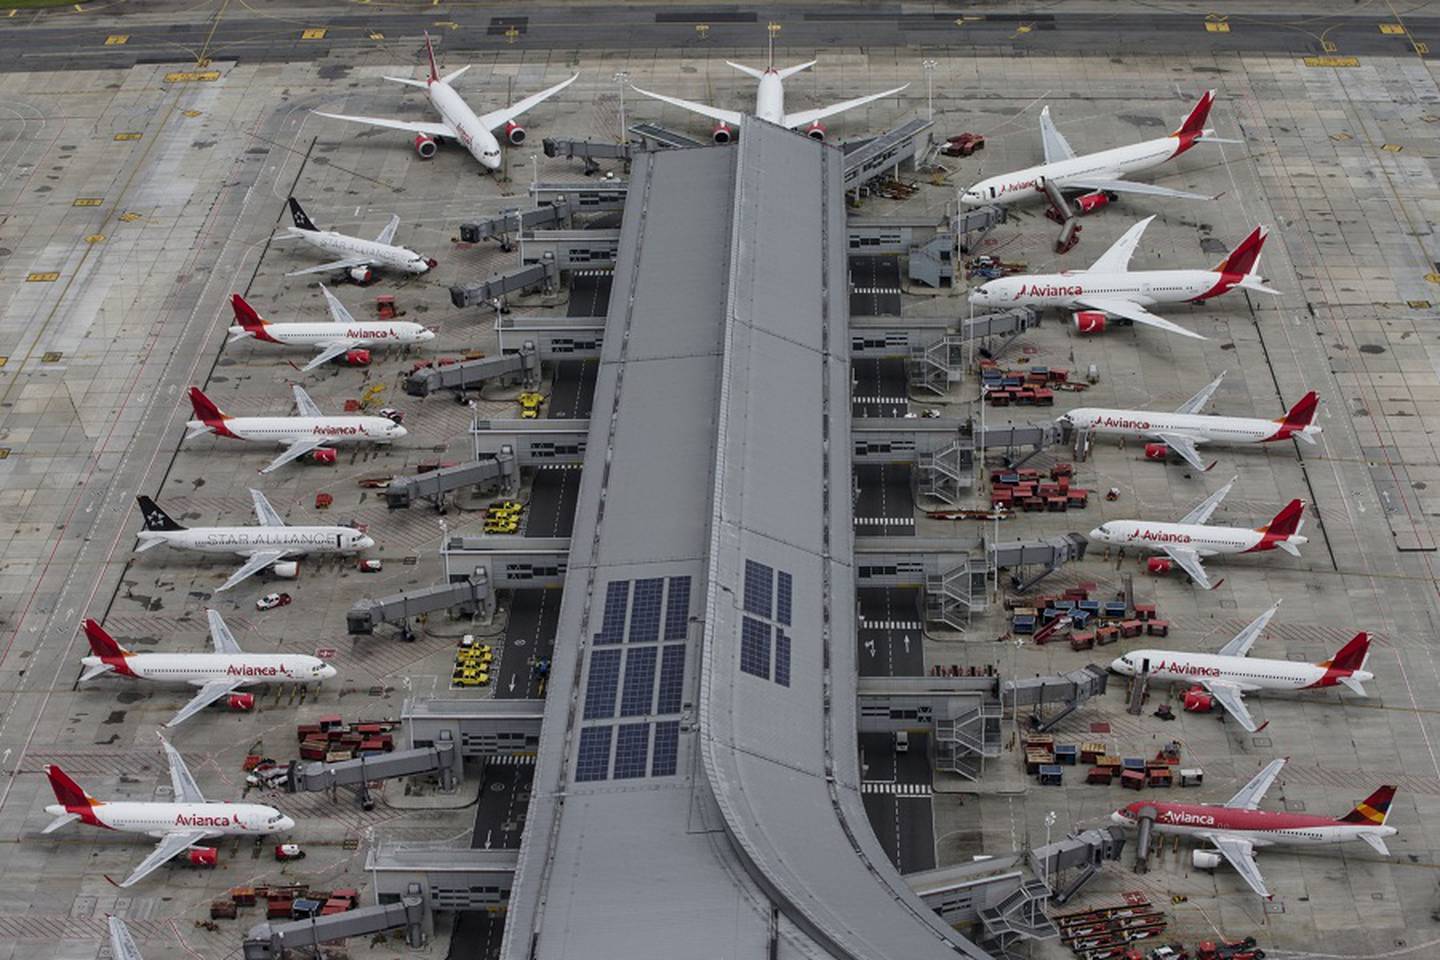 Los aviones de Avianca Holdings SA se encuentran estacionados en el Aeropuerto Internacional El Dorado en esta fotografía aérea tomada sobre Bogotá, Colombia, el martes 7 de abril de 2020.